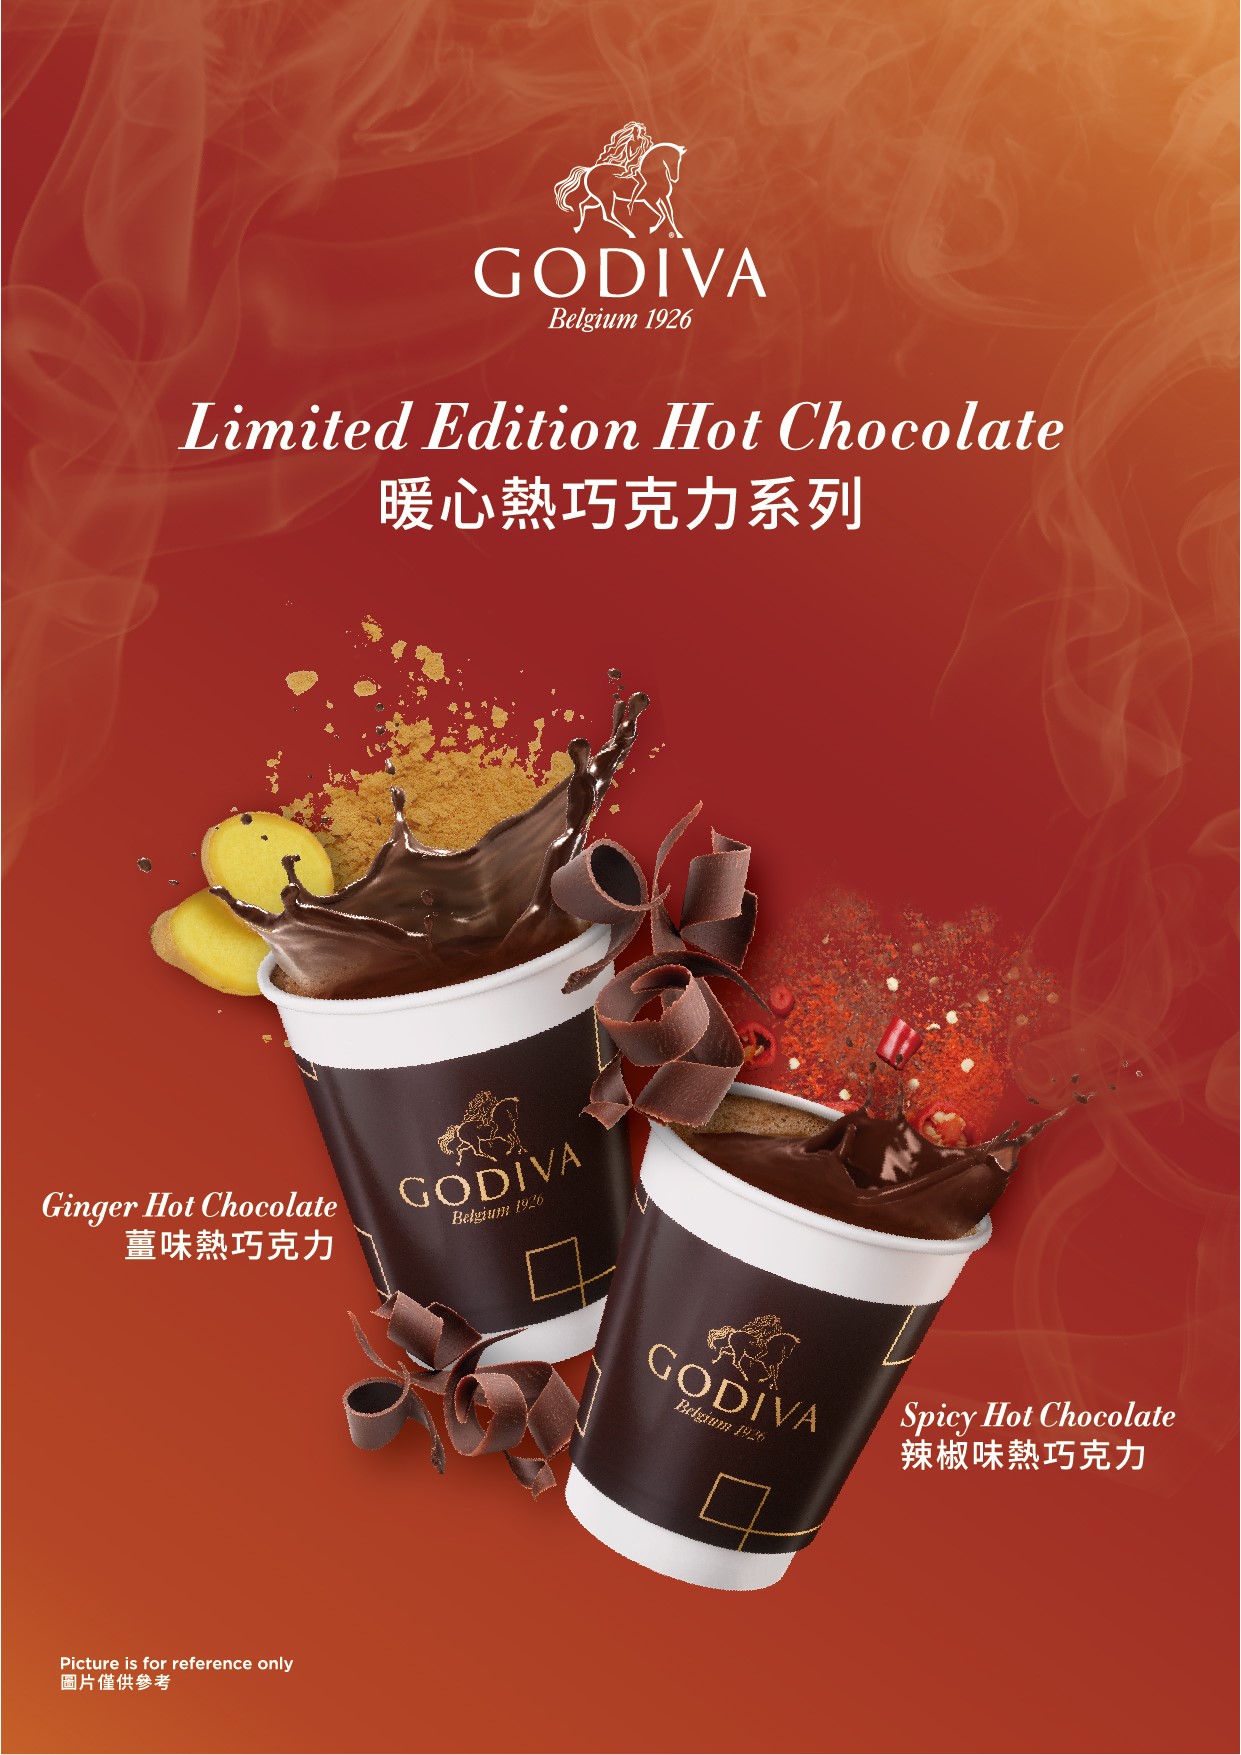 【台灣】這樣的天氣❄️最適合來一杯期間限定GODIVA暖心熱巧克力❤️